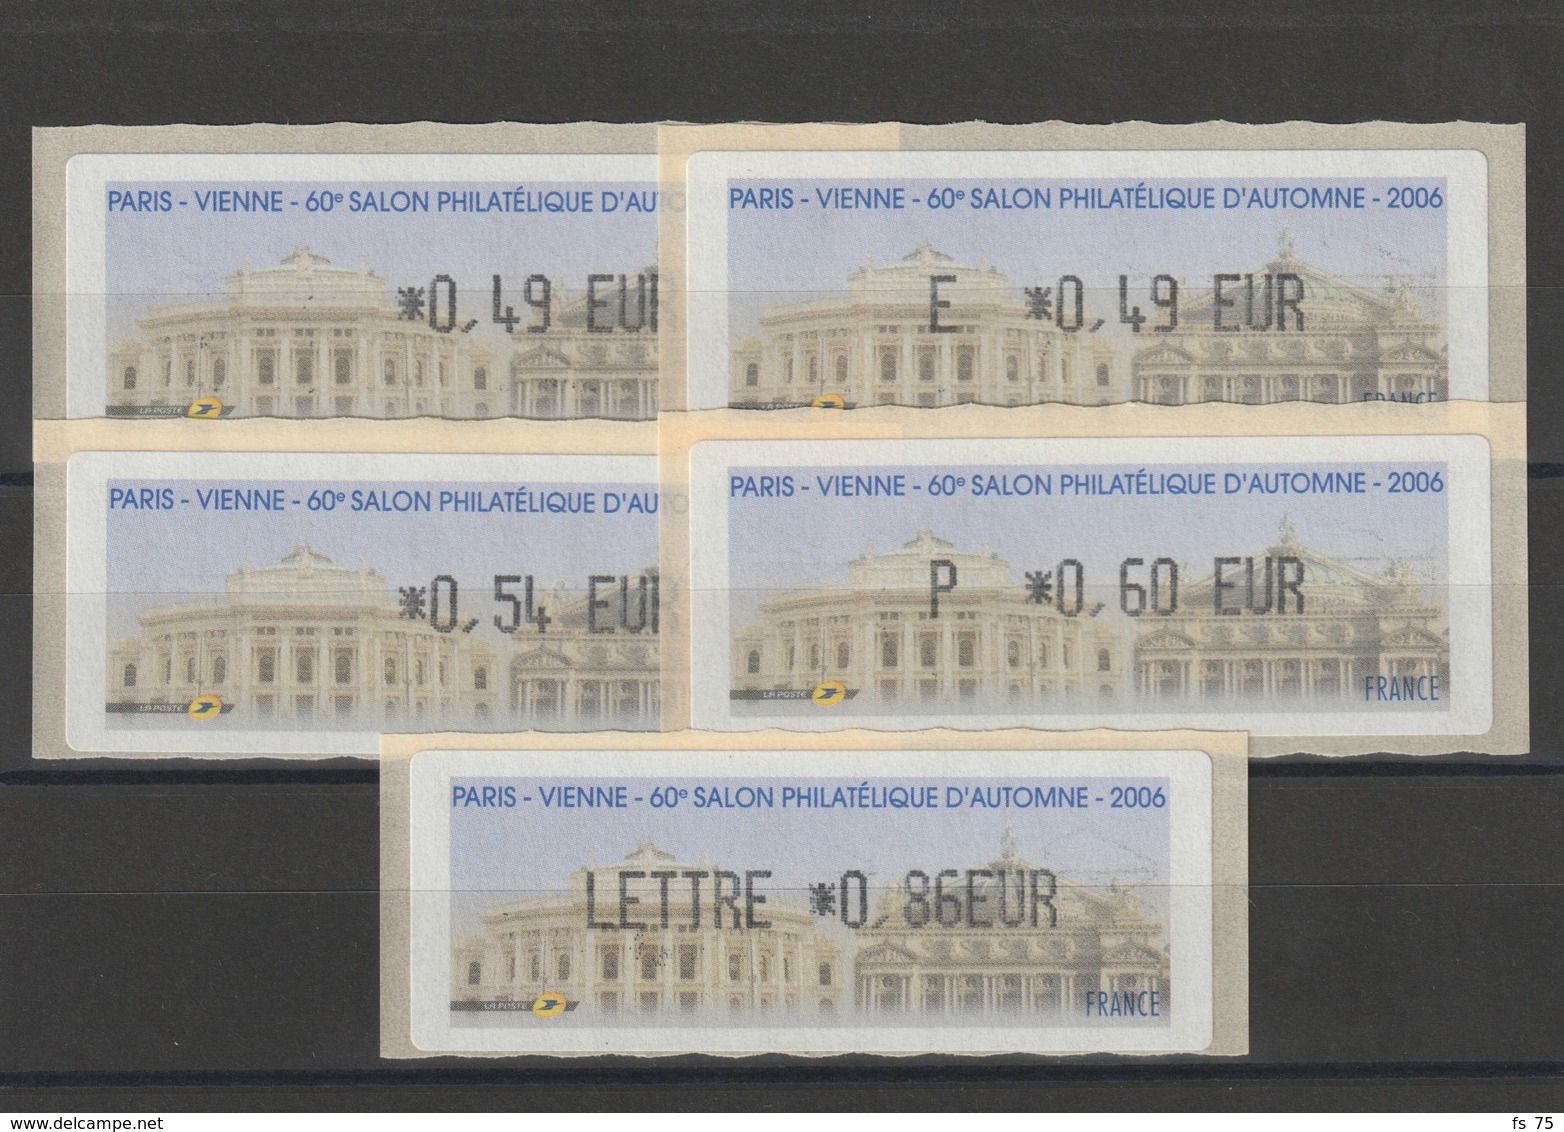 FRANCE - 5 VIGNETTES 0,49€, E. 0,49€, 0,54€, 0,60€ ET 0,86€ - PARIS - VIENNE - 60EME SALON PHILATELIQUE D'AUTOMNE 2006 - 1999-2009 Vignettes Illustrées